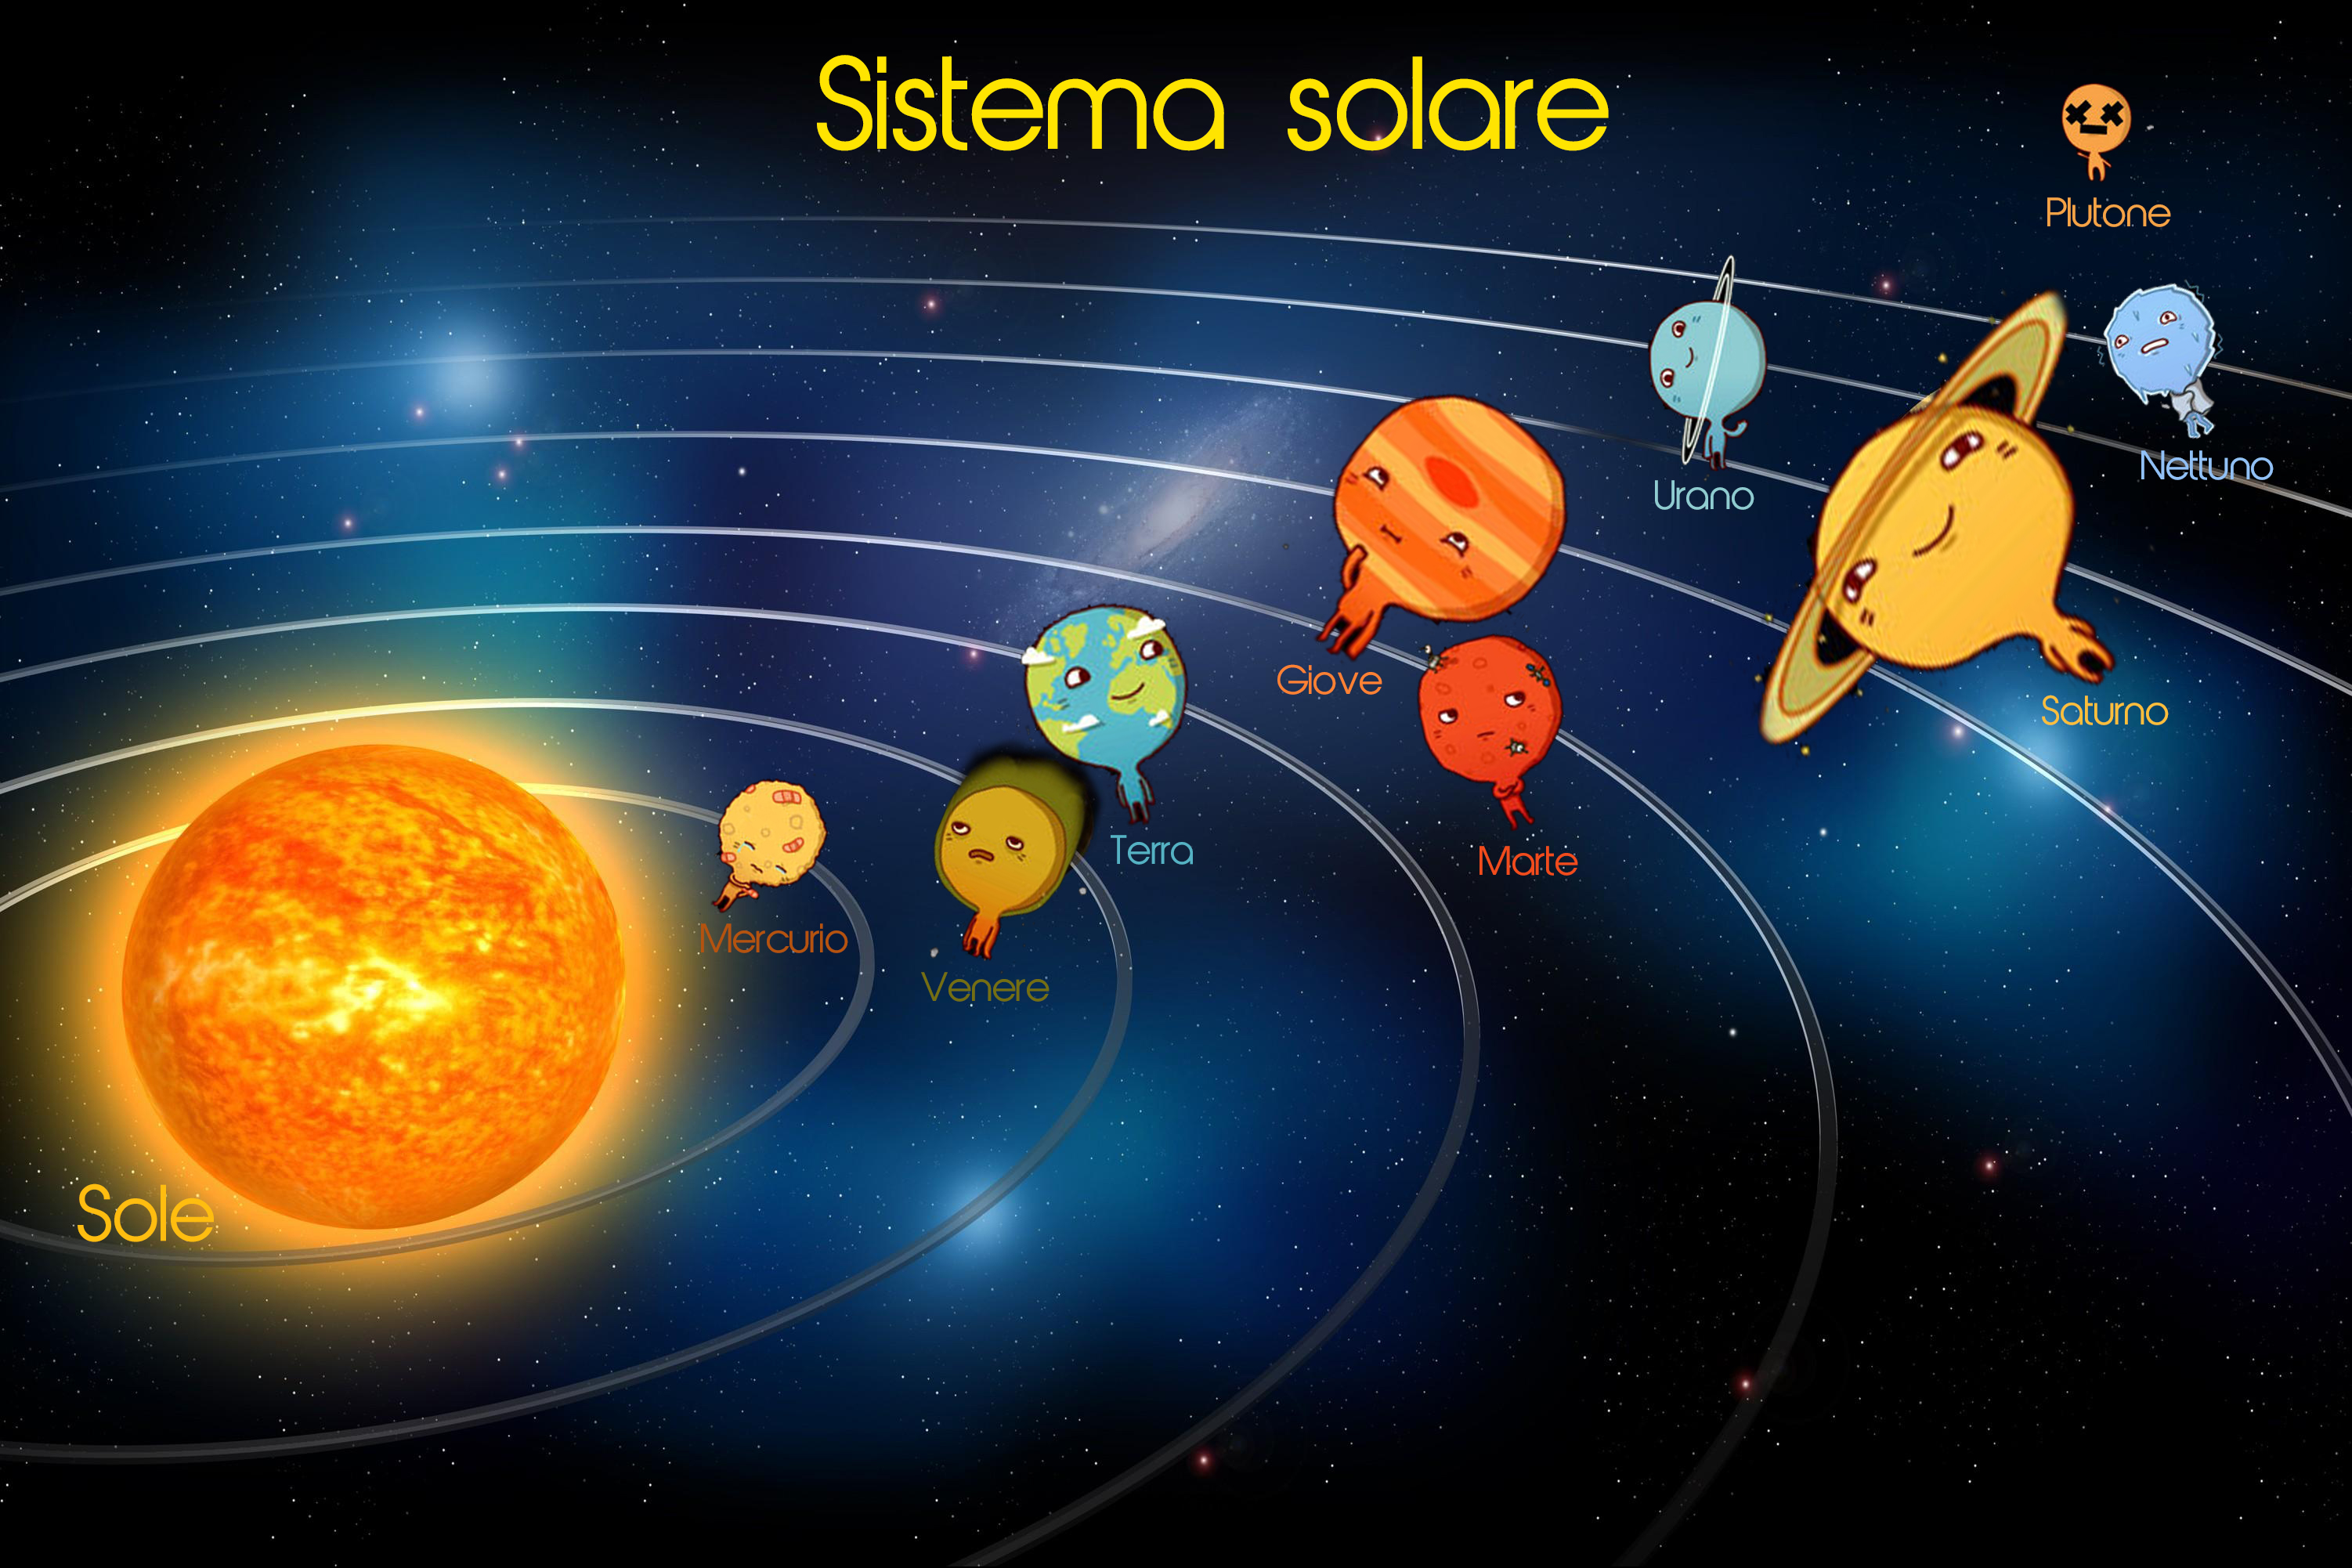 Il sistema solare e i pianeti